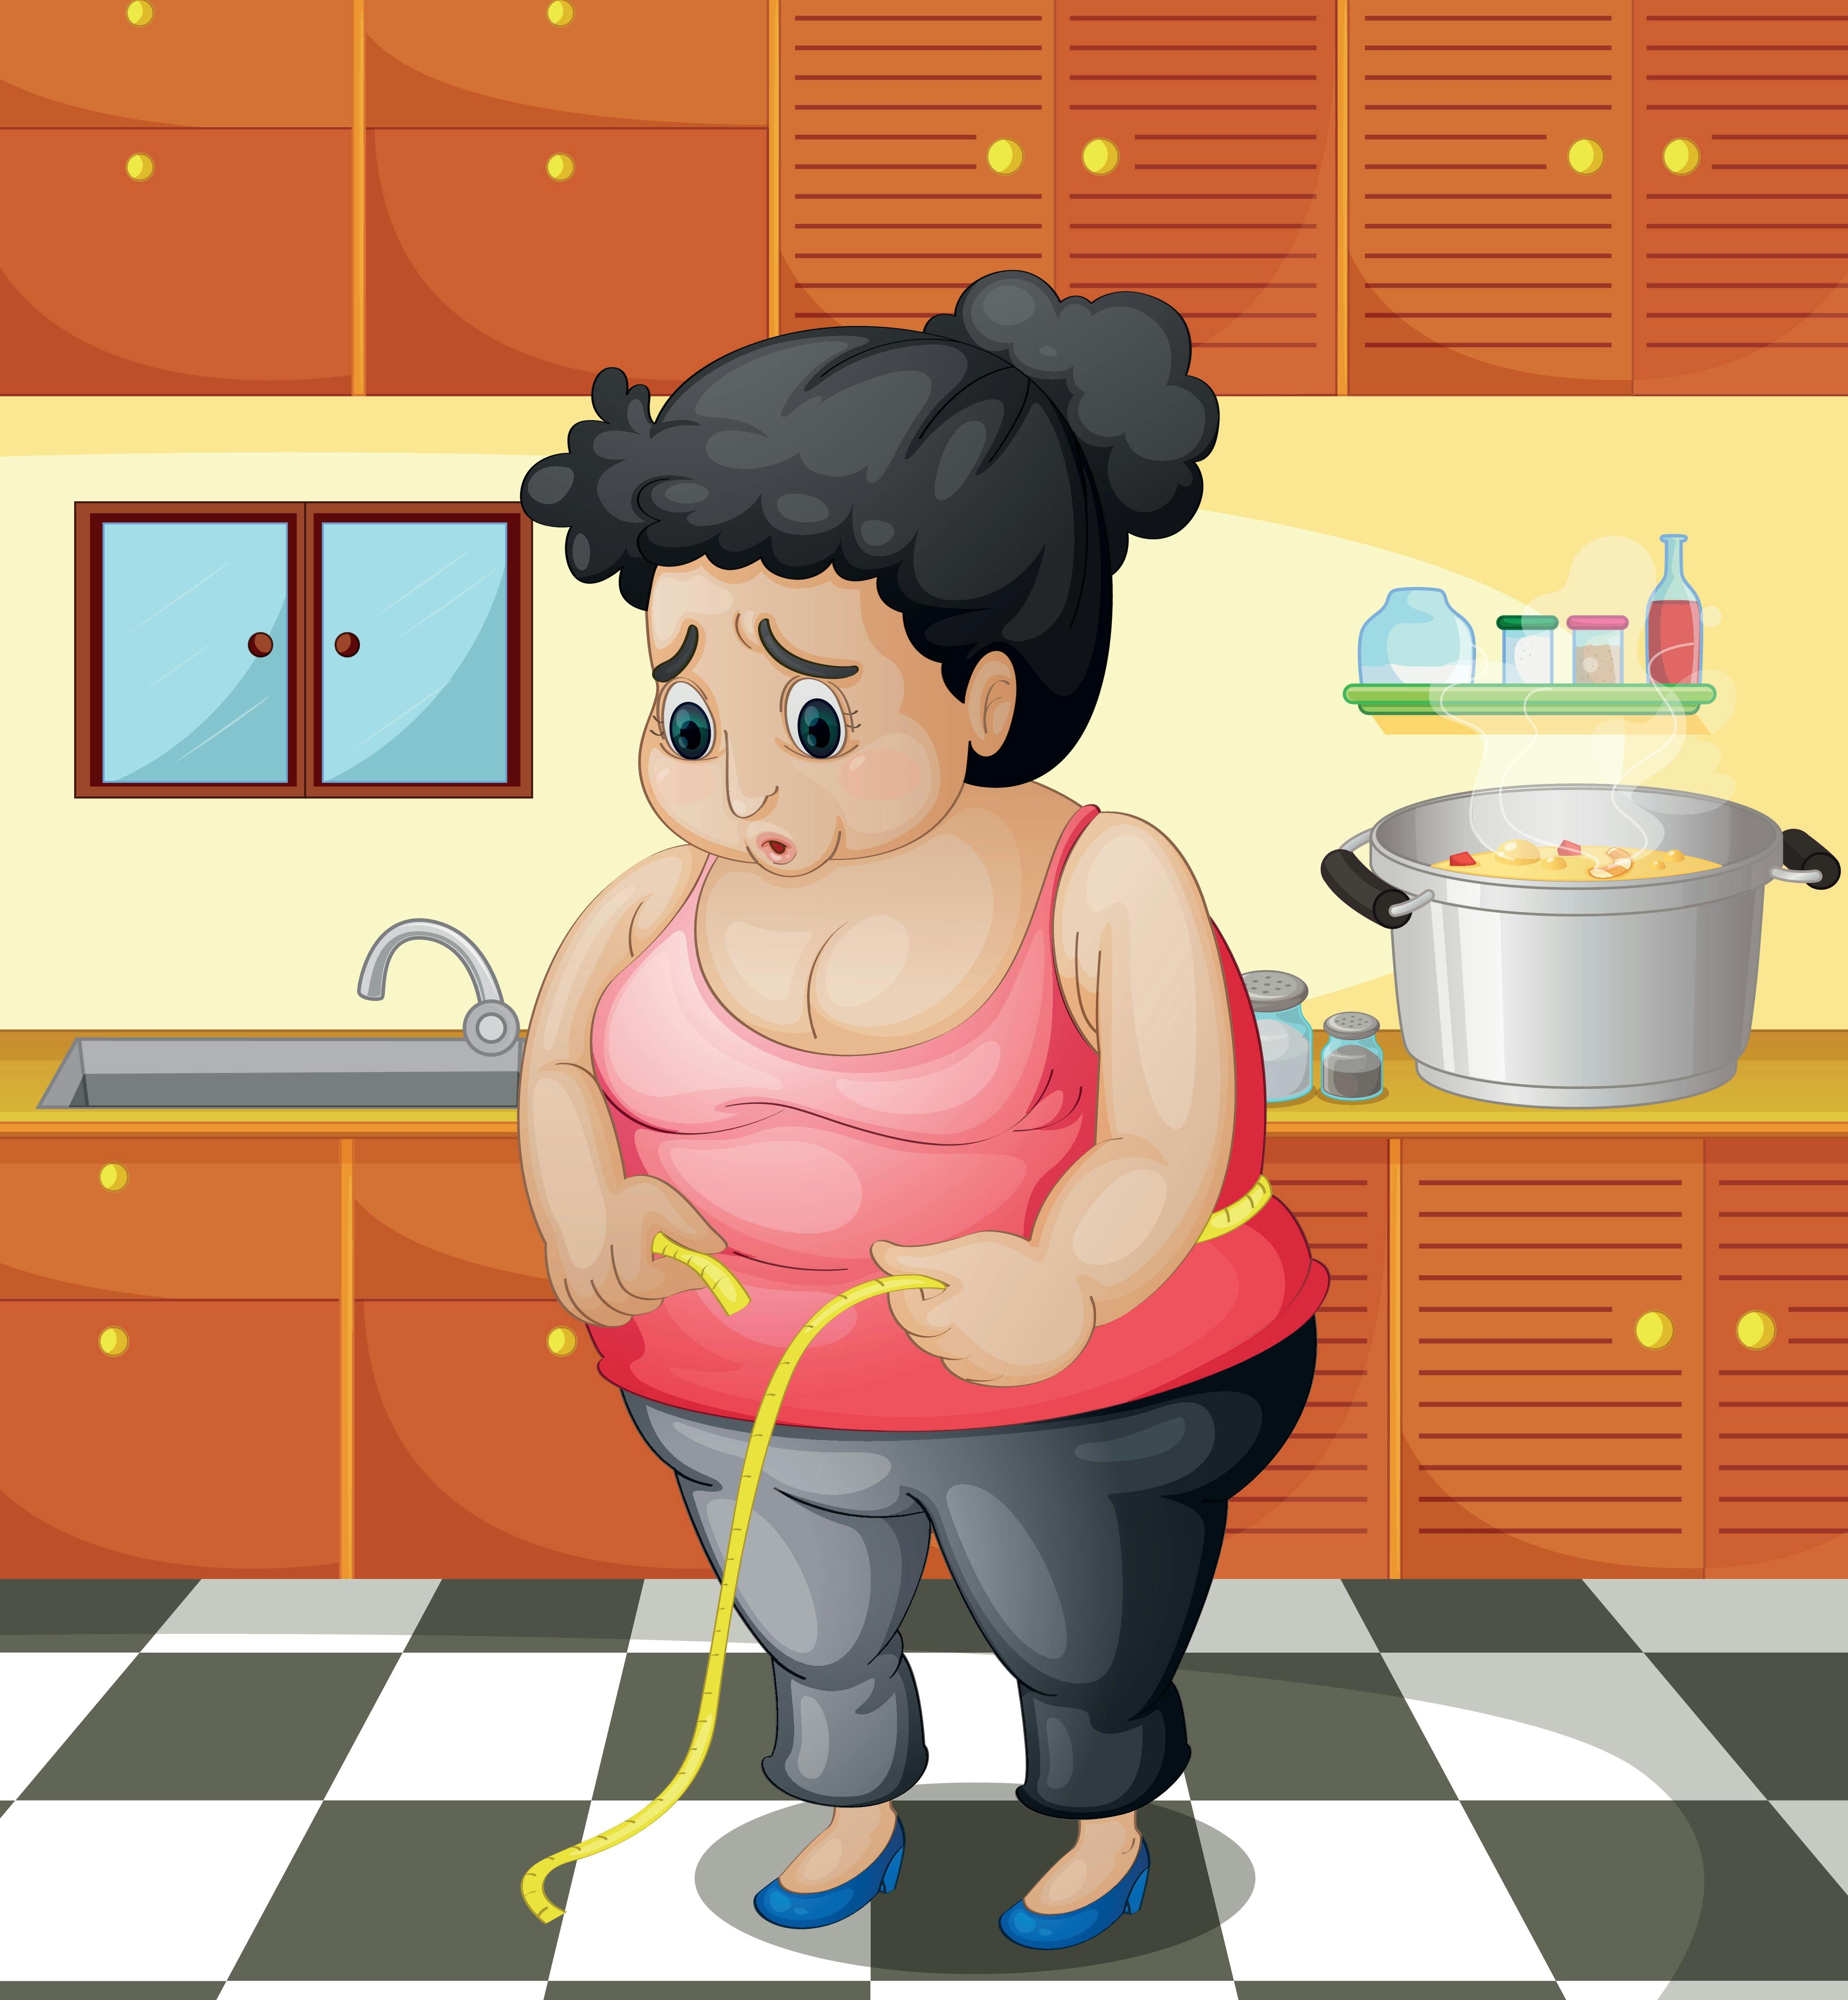 Tegning af overvægtig kvinde med målebånd i køkken.